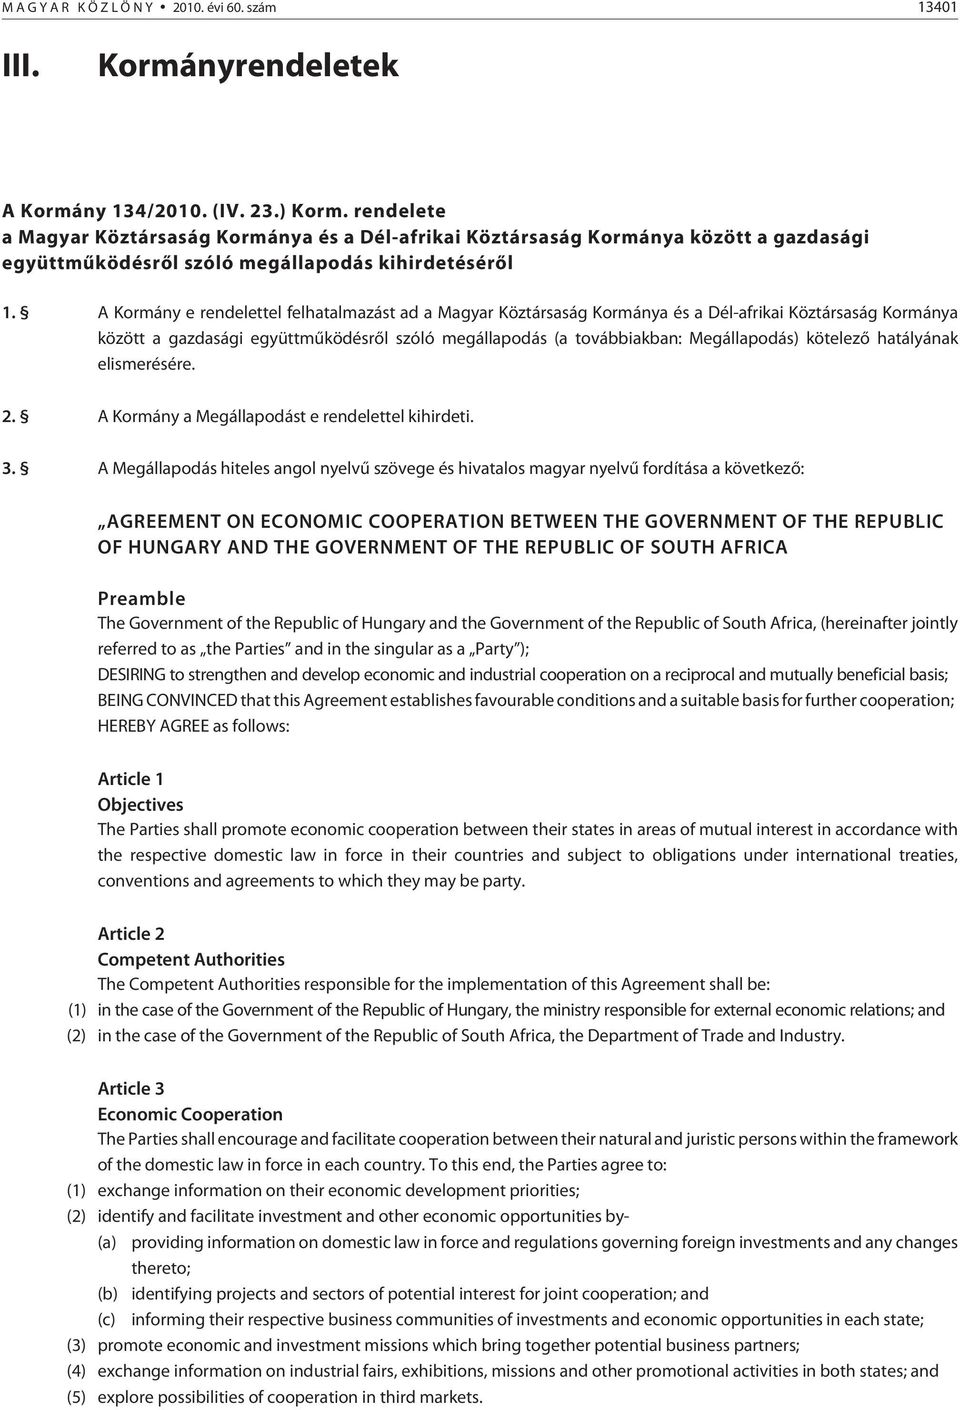 A Kormány e rendelettel felhatalmazást ad a Magyar Köztársaság Kormánya és a Dél-afrikai Köztársaság Kormánya között a gazdasági együttmûködésrõl szóló megállapodás (a továbbiakban: Megállapodás)